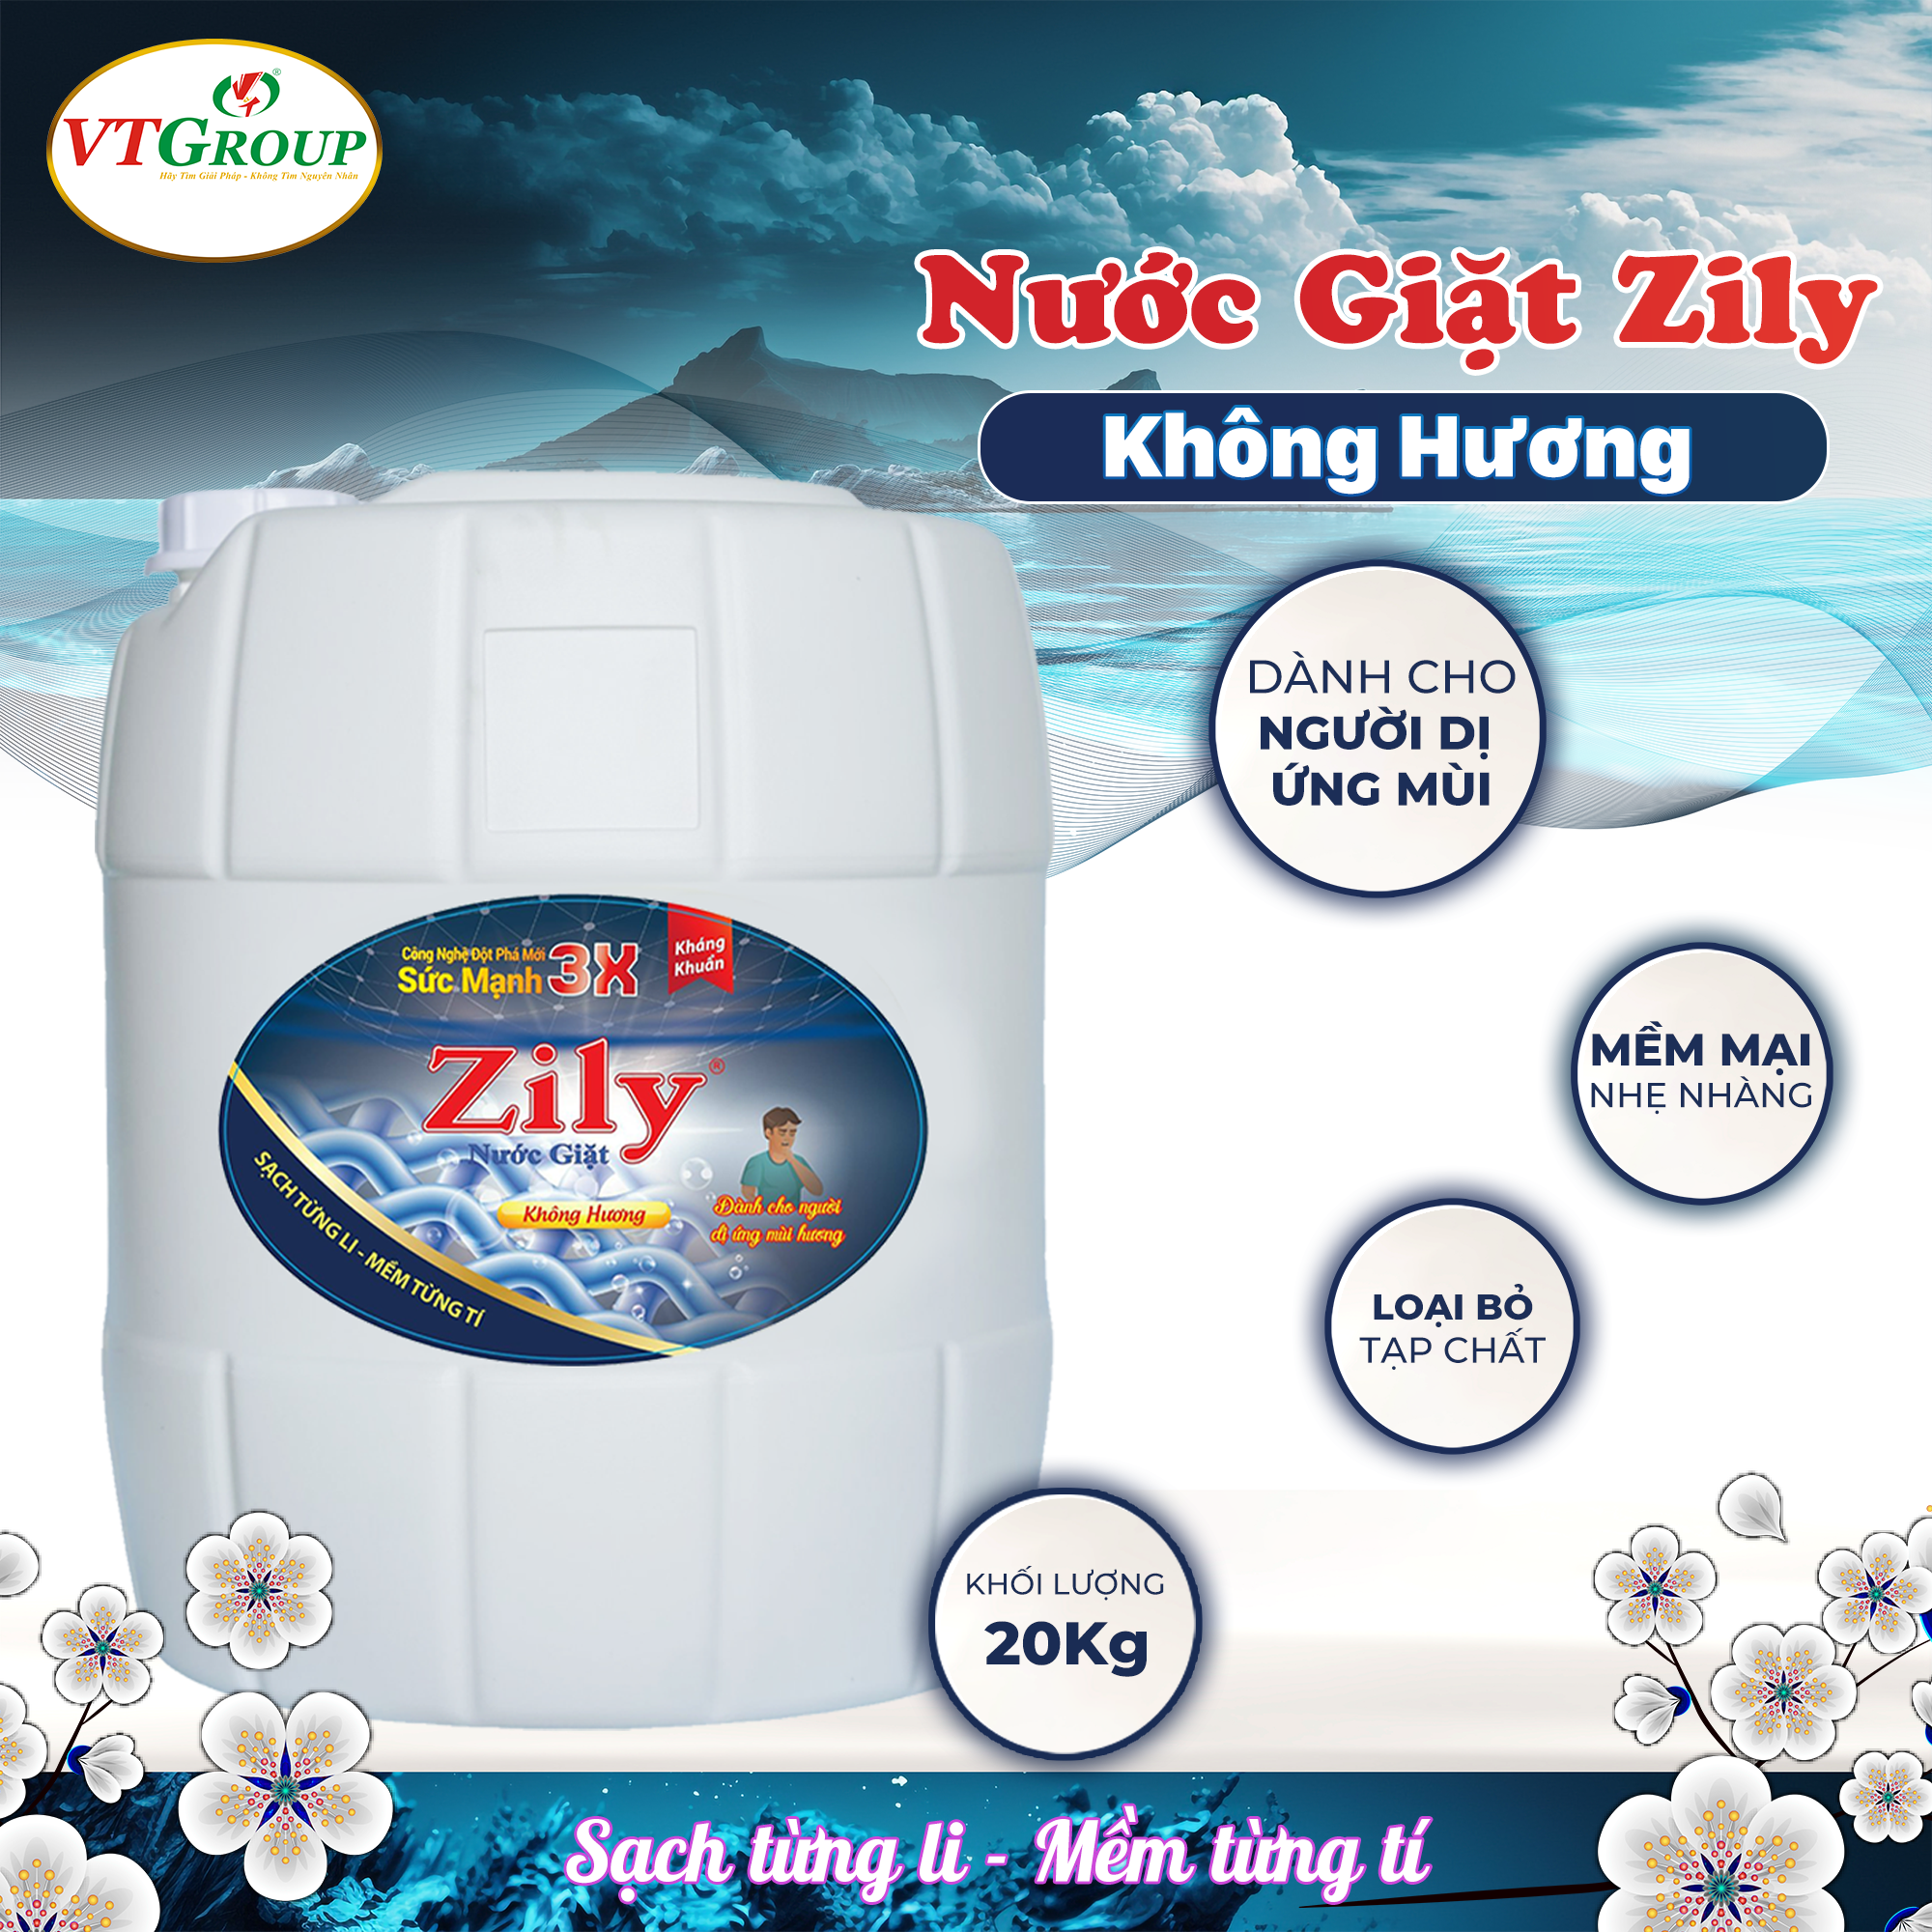 Nước giặt Zily can 20kg (Can) - Tặng 1 can xả vải 5kg biển tình